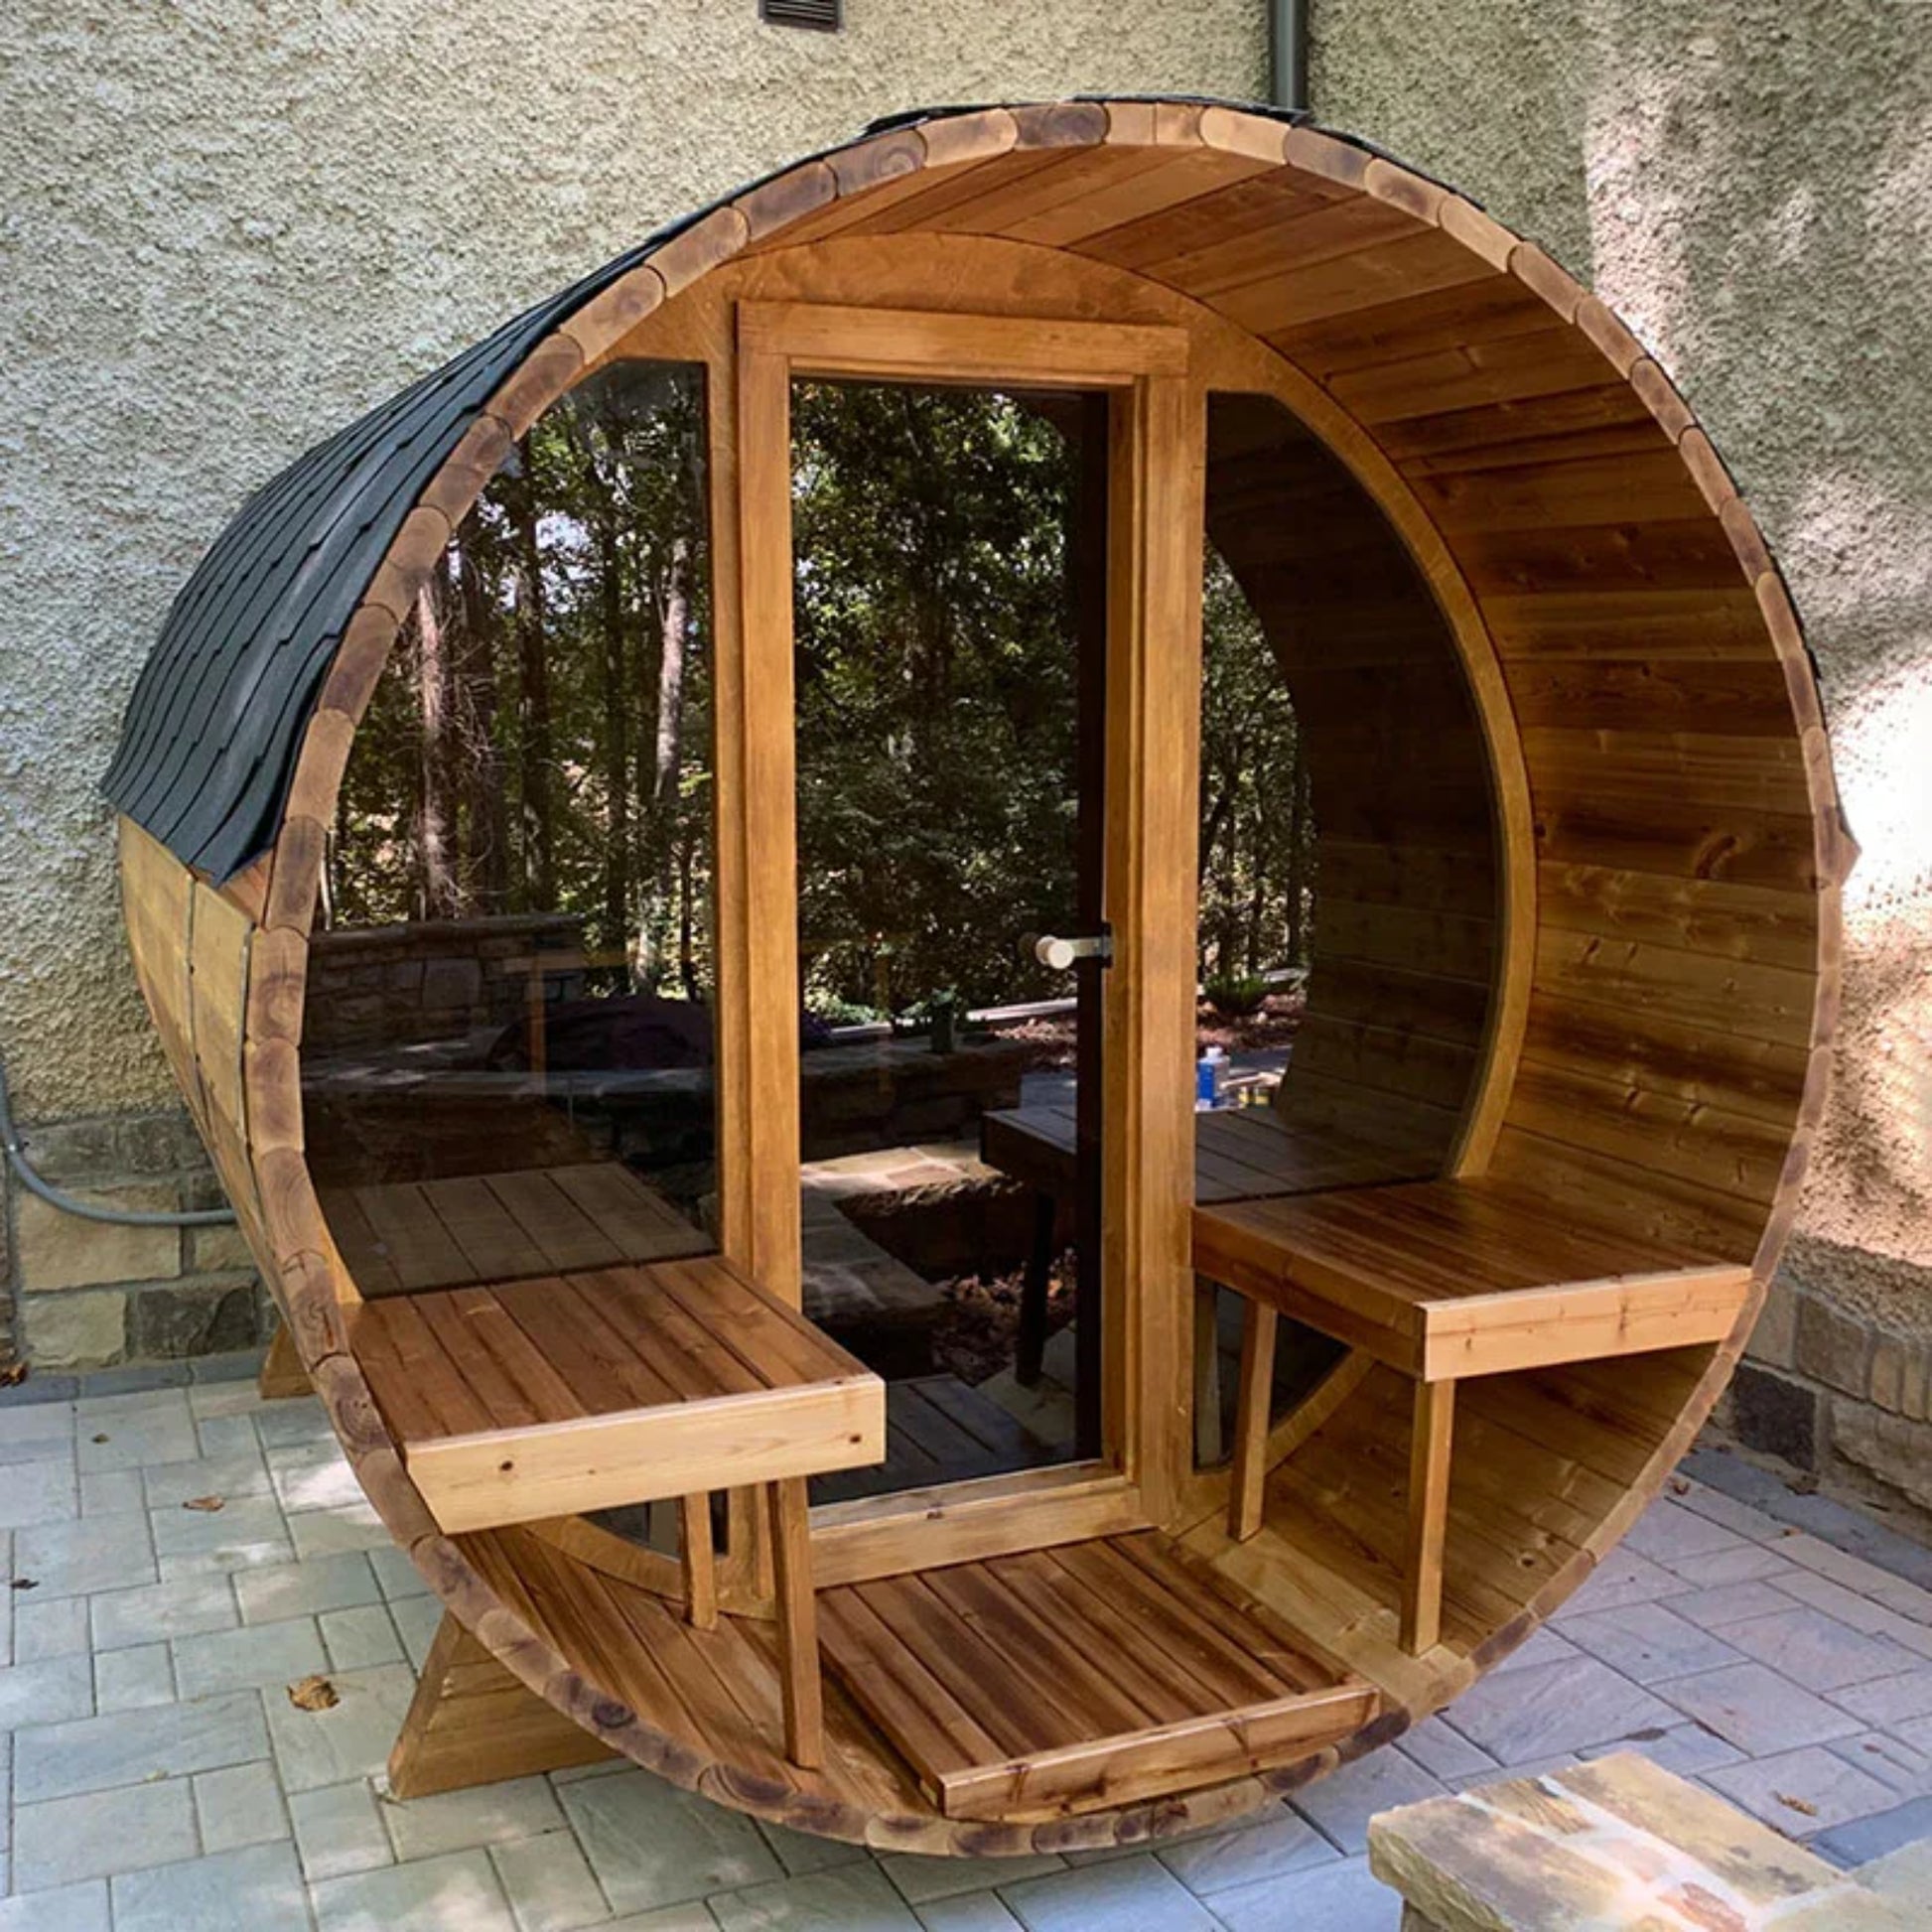 4-Person-Traditional-Outdoor-Barrel Sauna